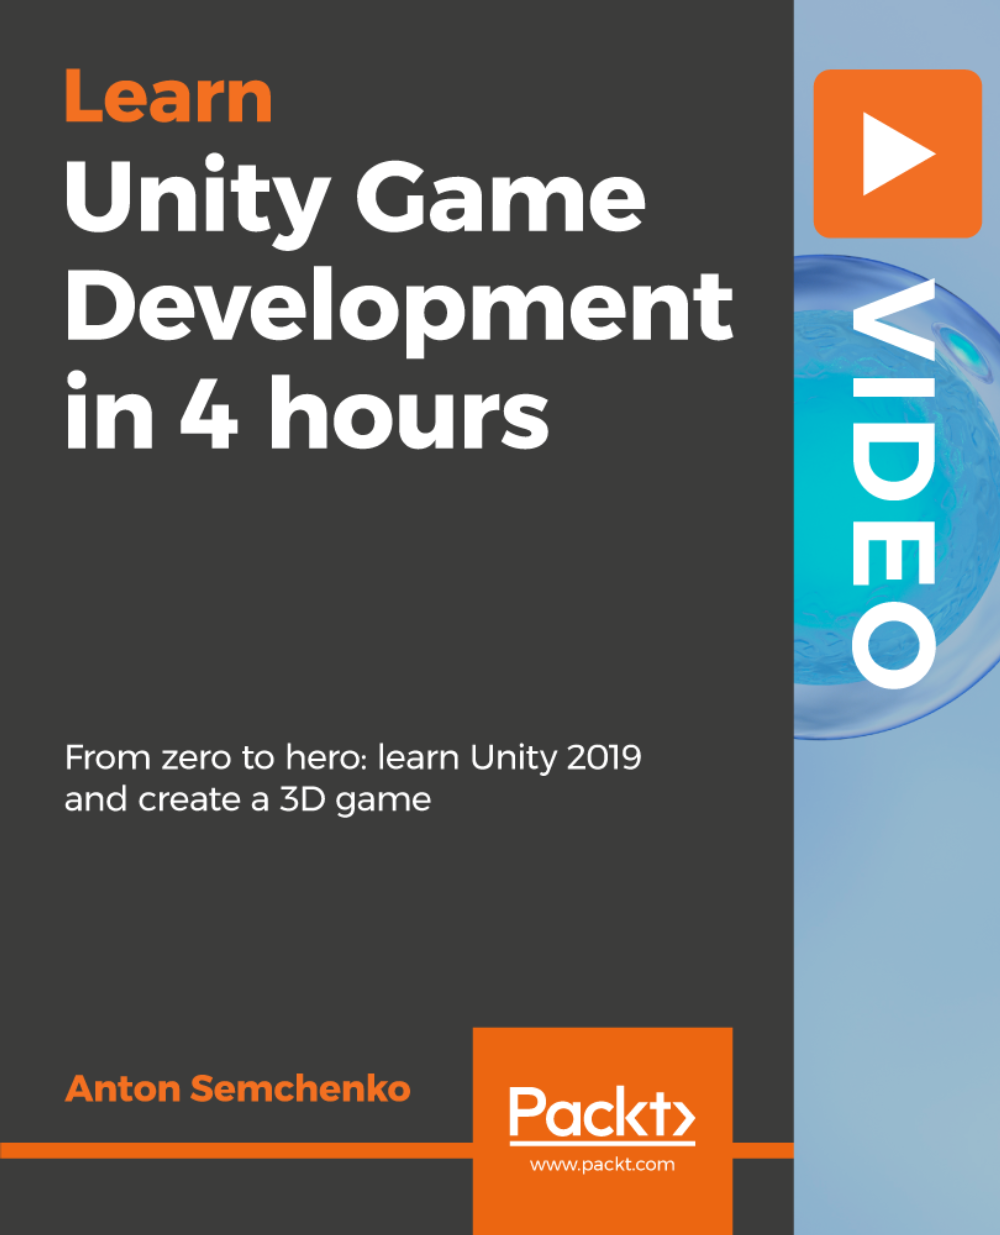 آموزش توسعه بازی Unity در 4 ساعت [ویدئو]